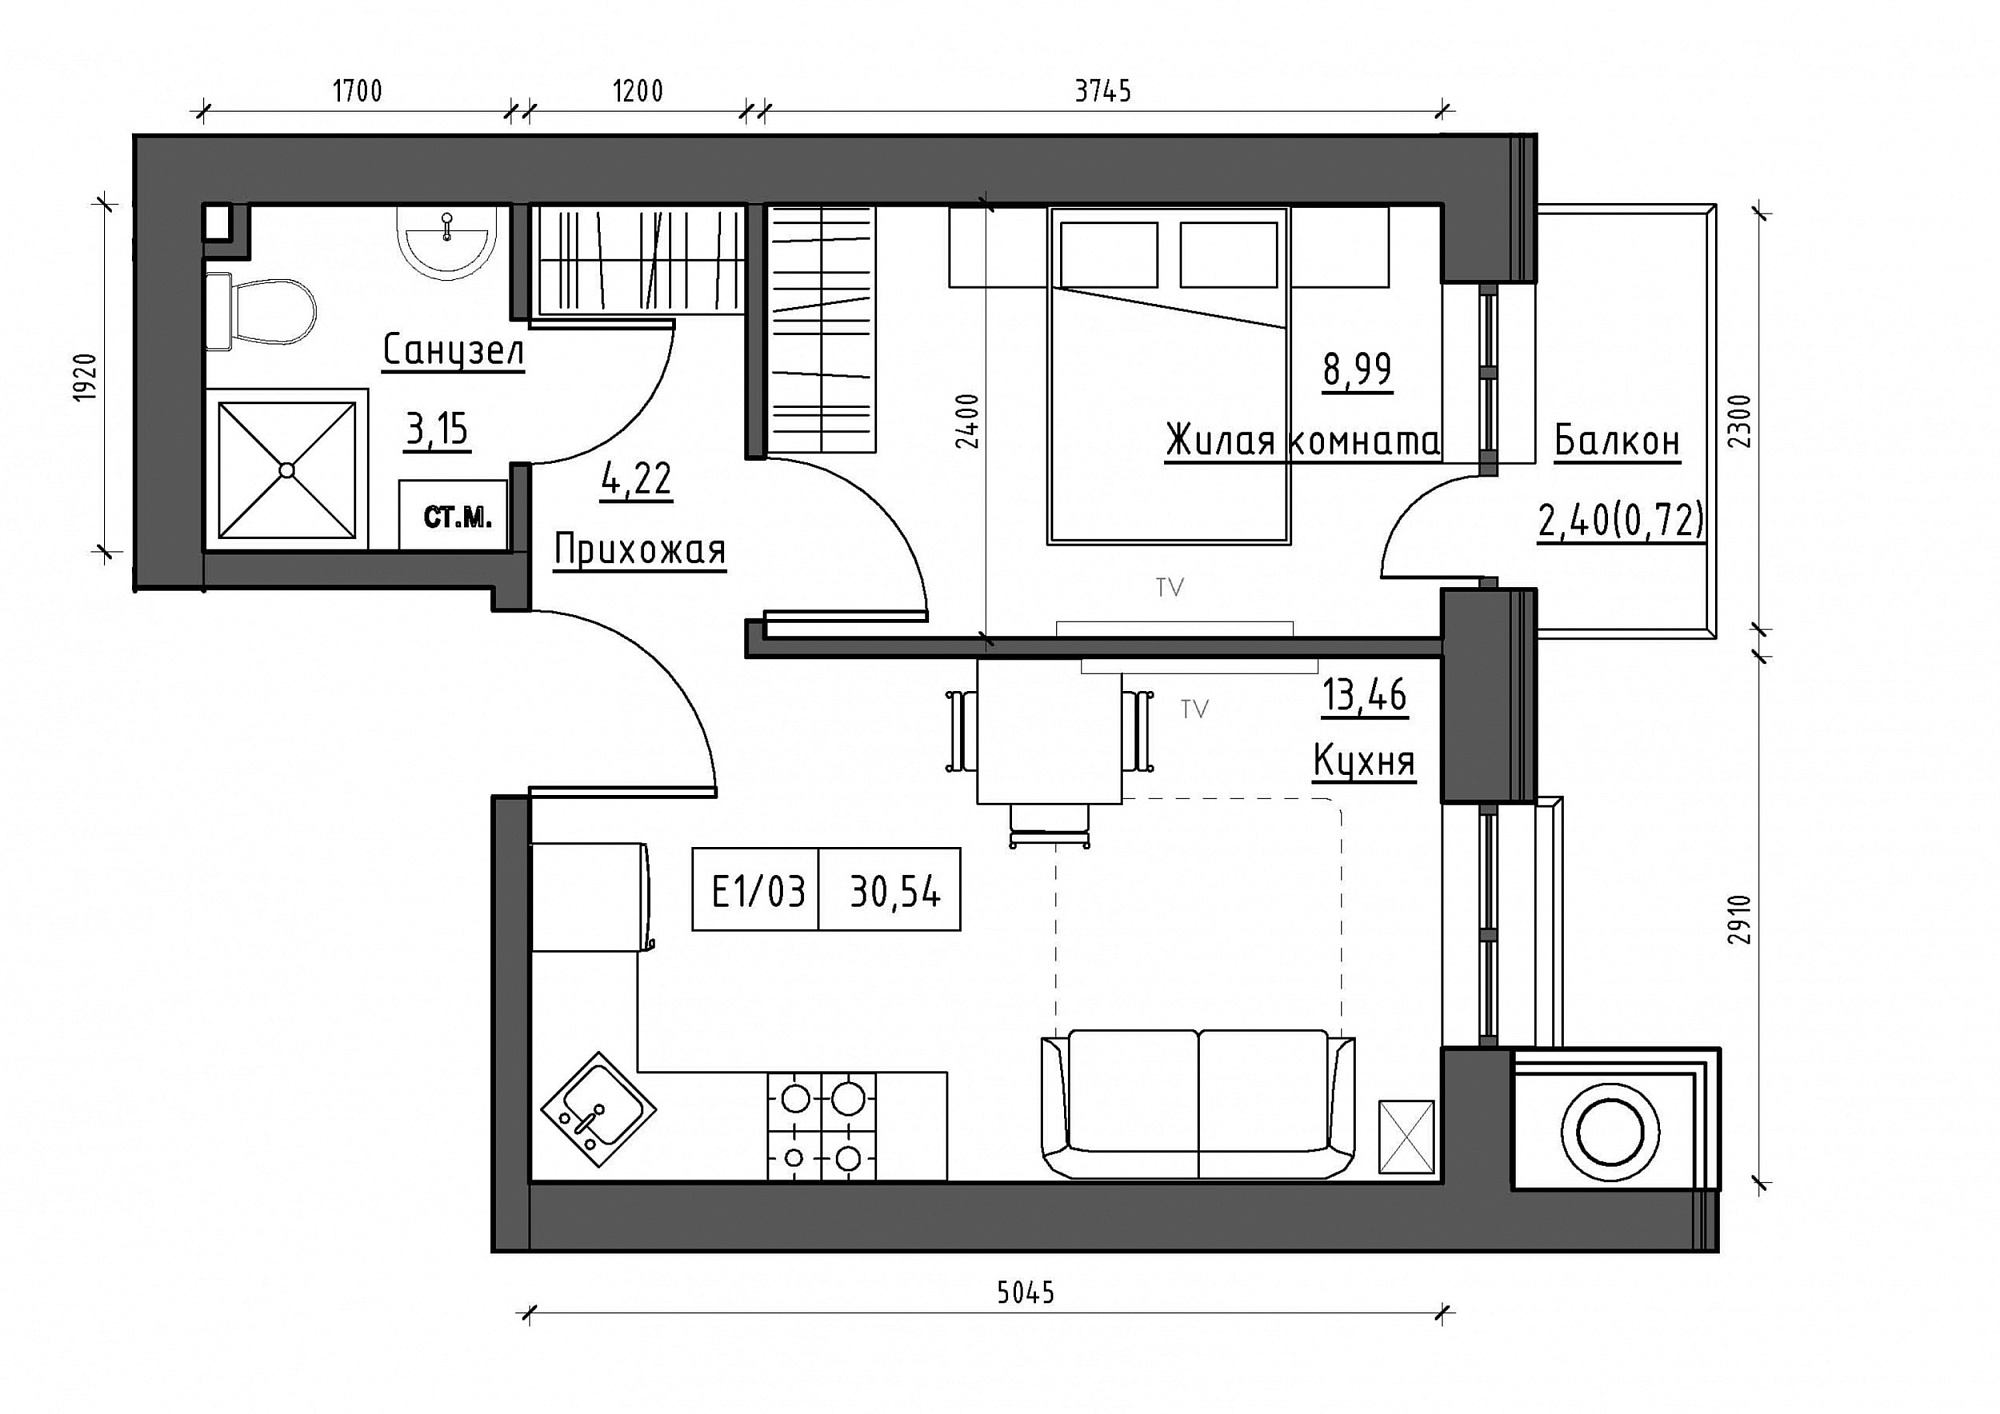 Планировка 1-к квартира площей 30.54м2, KS-012-05/0016.